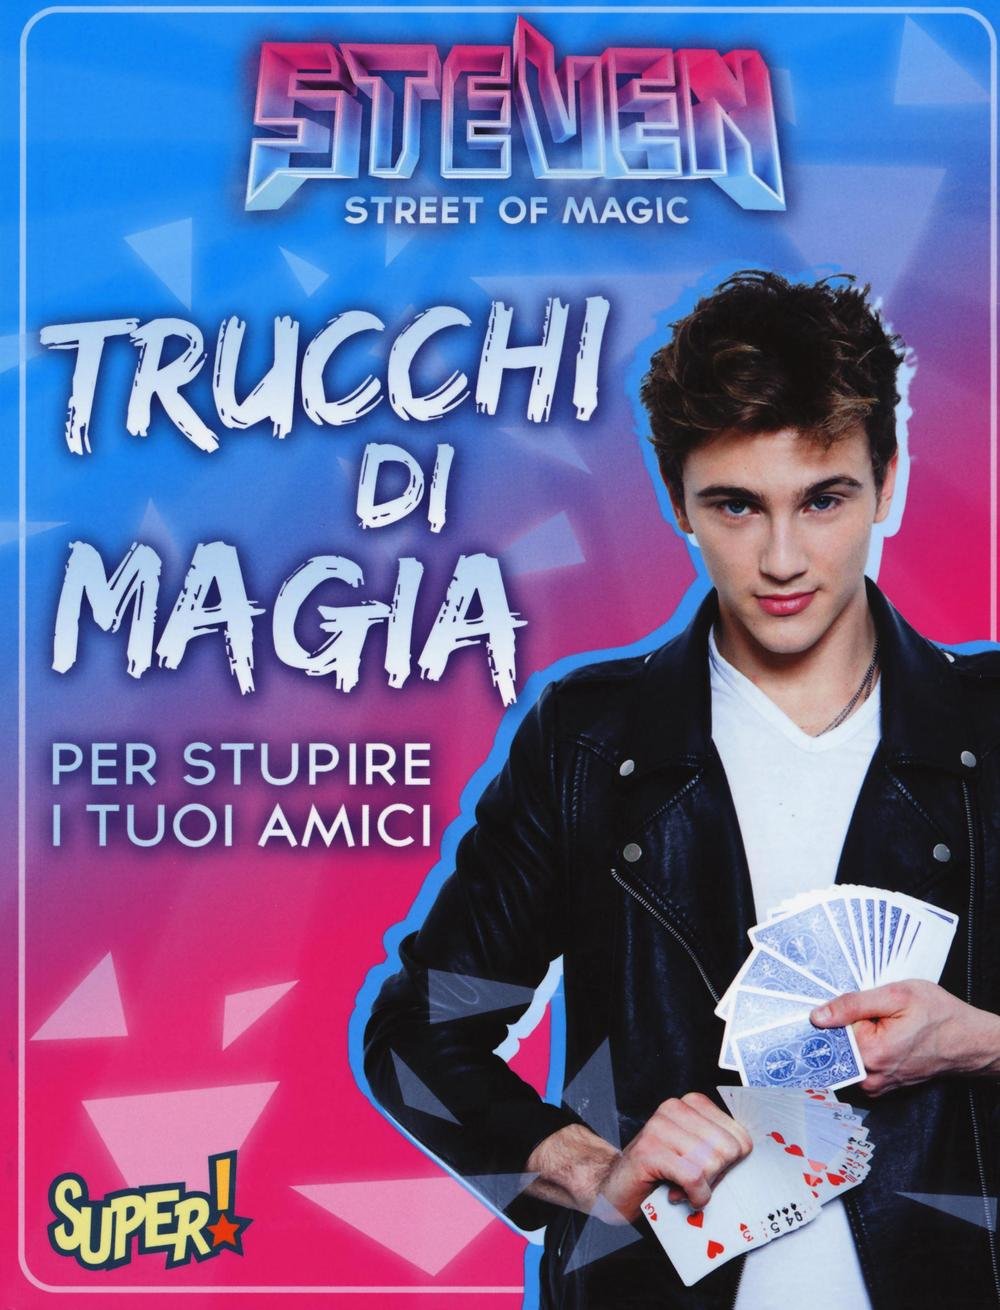 Steven Street Of Magic Trucchi Di Magia Per Stupire I Tuoi